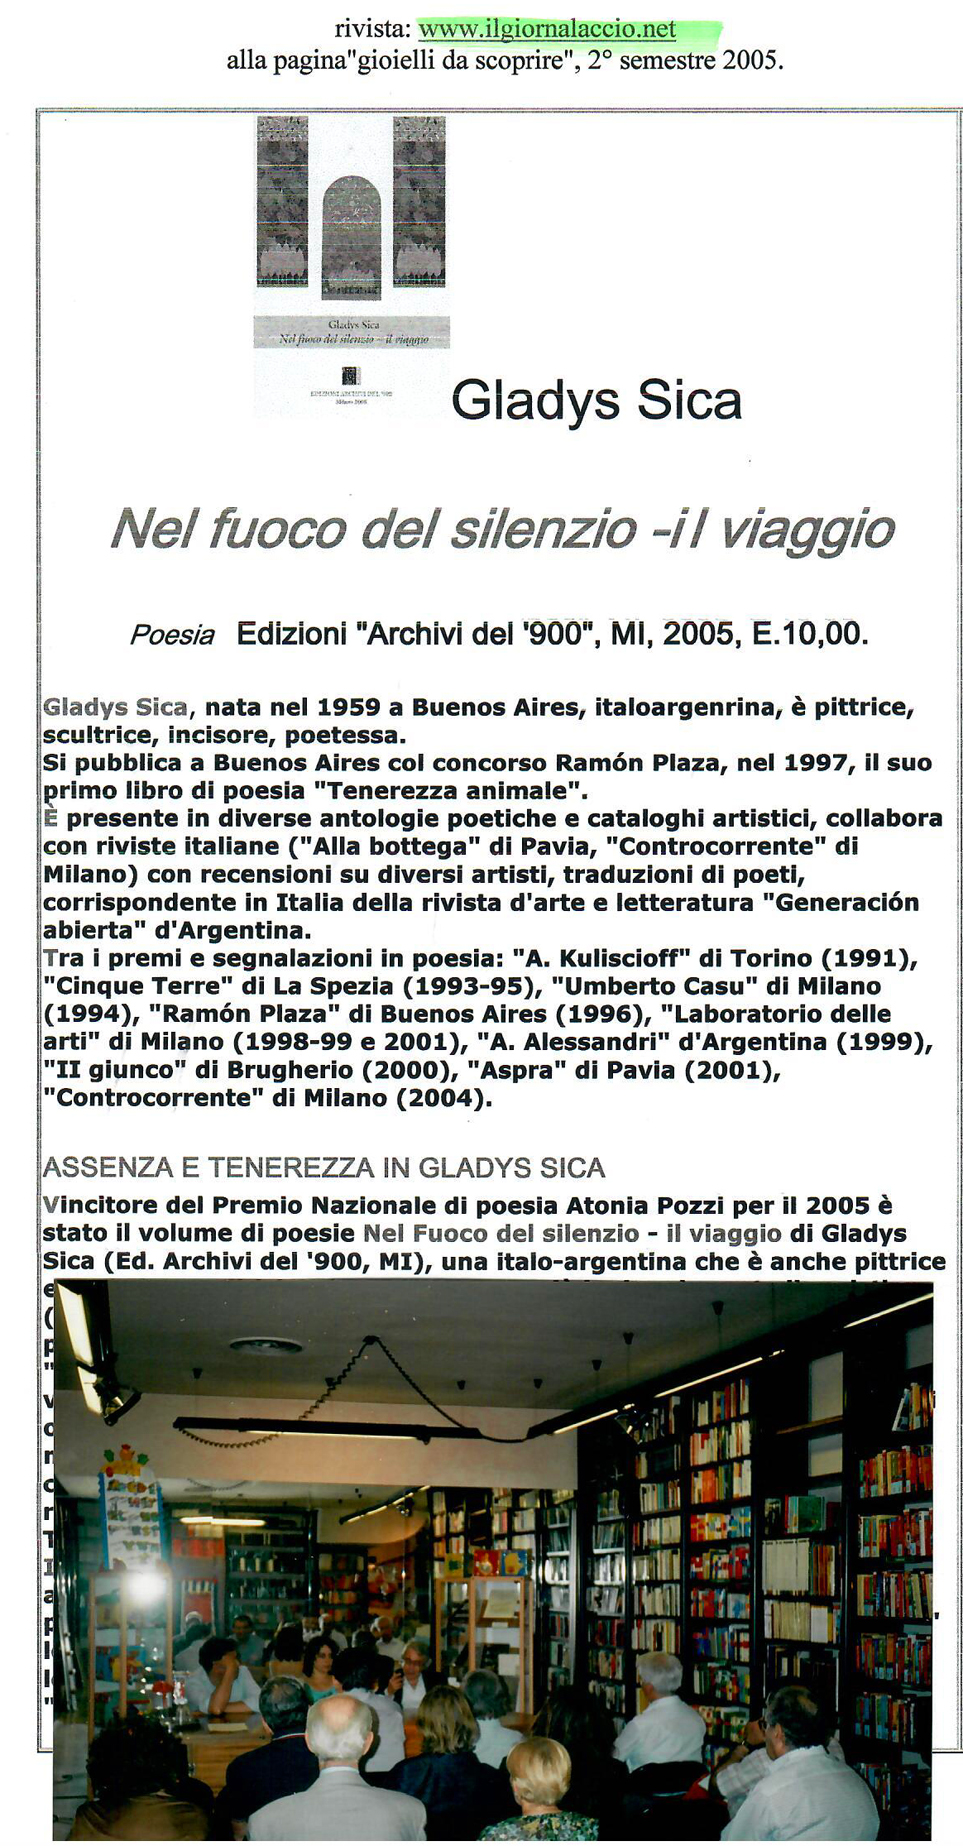 2005 - Presentazione del Libro di Poesia di Gladys Sica 'Nel Fuoco del silenzio-Il Viaggio', 1° Premio Concorso Antonia Pozzi, Libreria Archivi del '900, Milano.